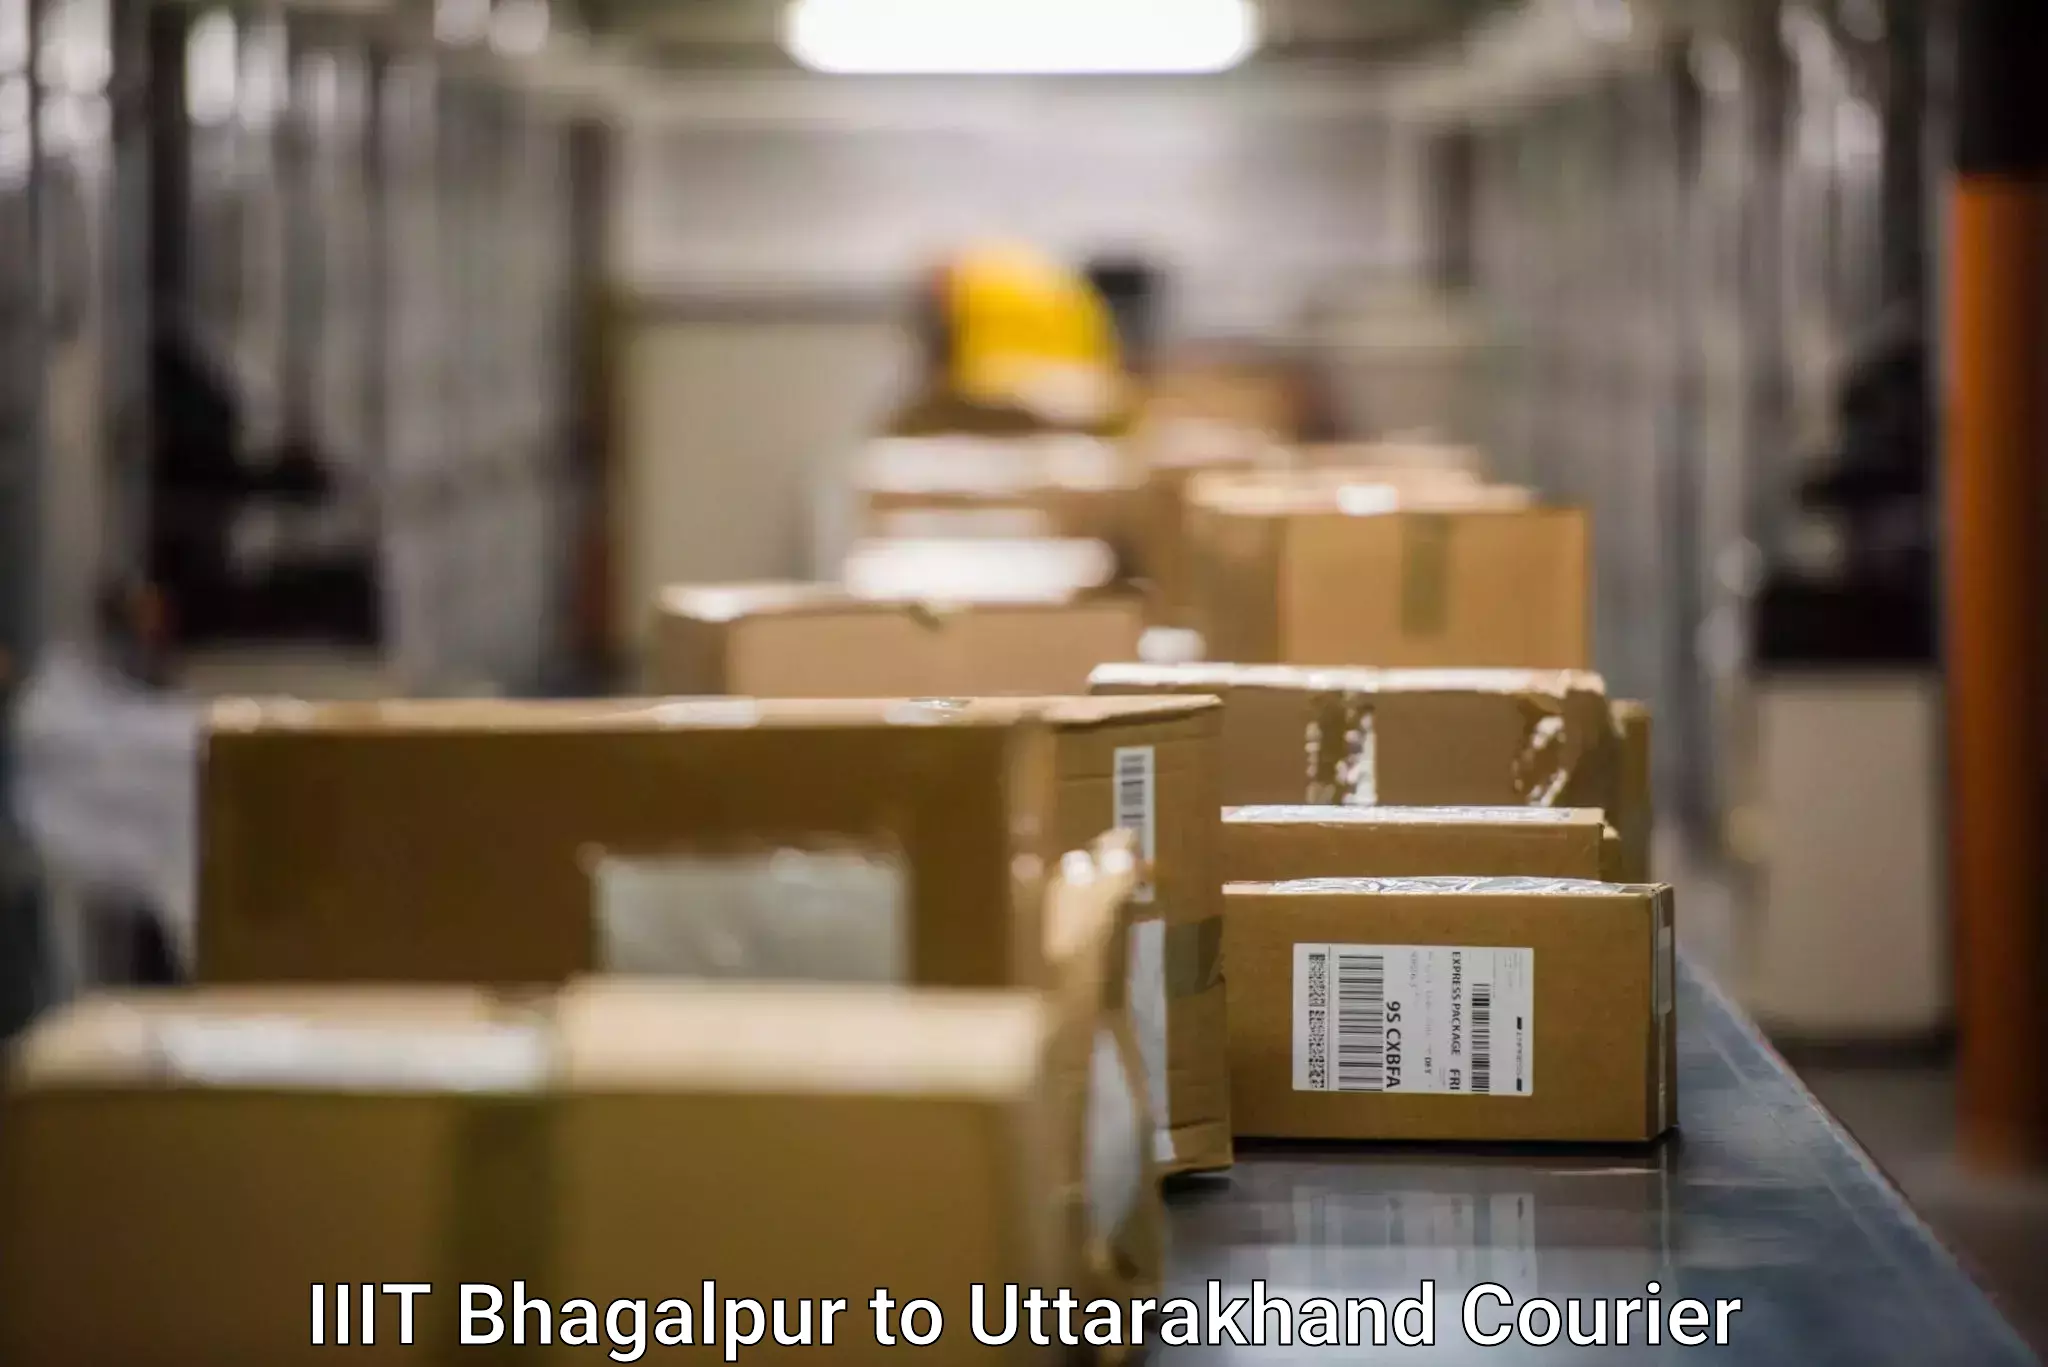 Courier service comparison IIIT Bhagalpur to Rudrapur